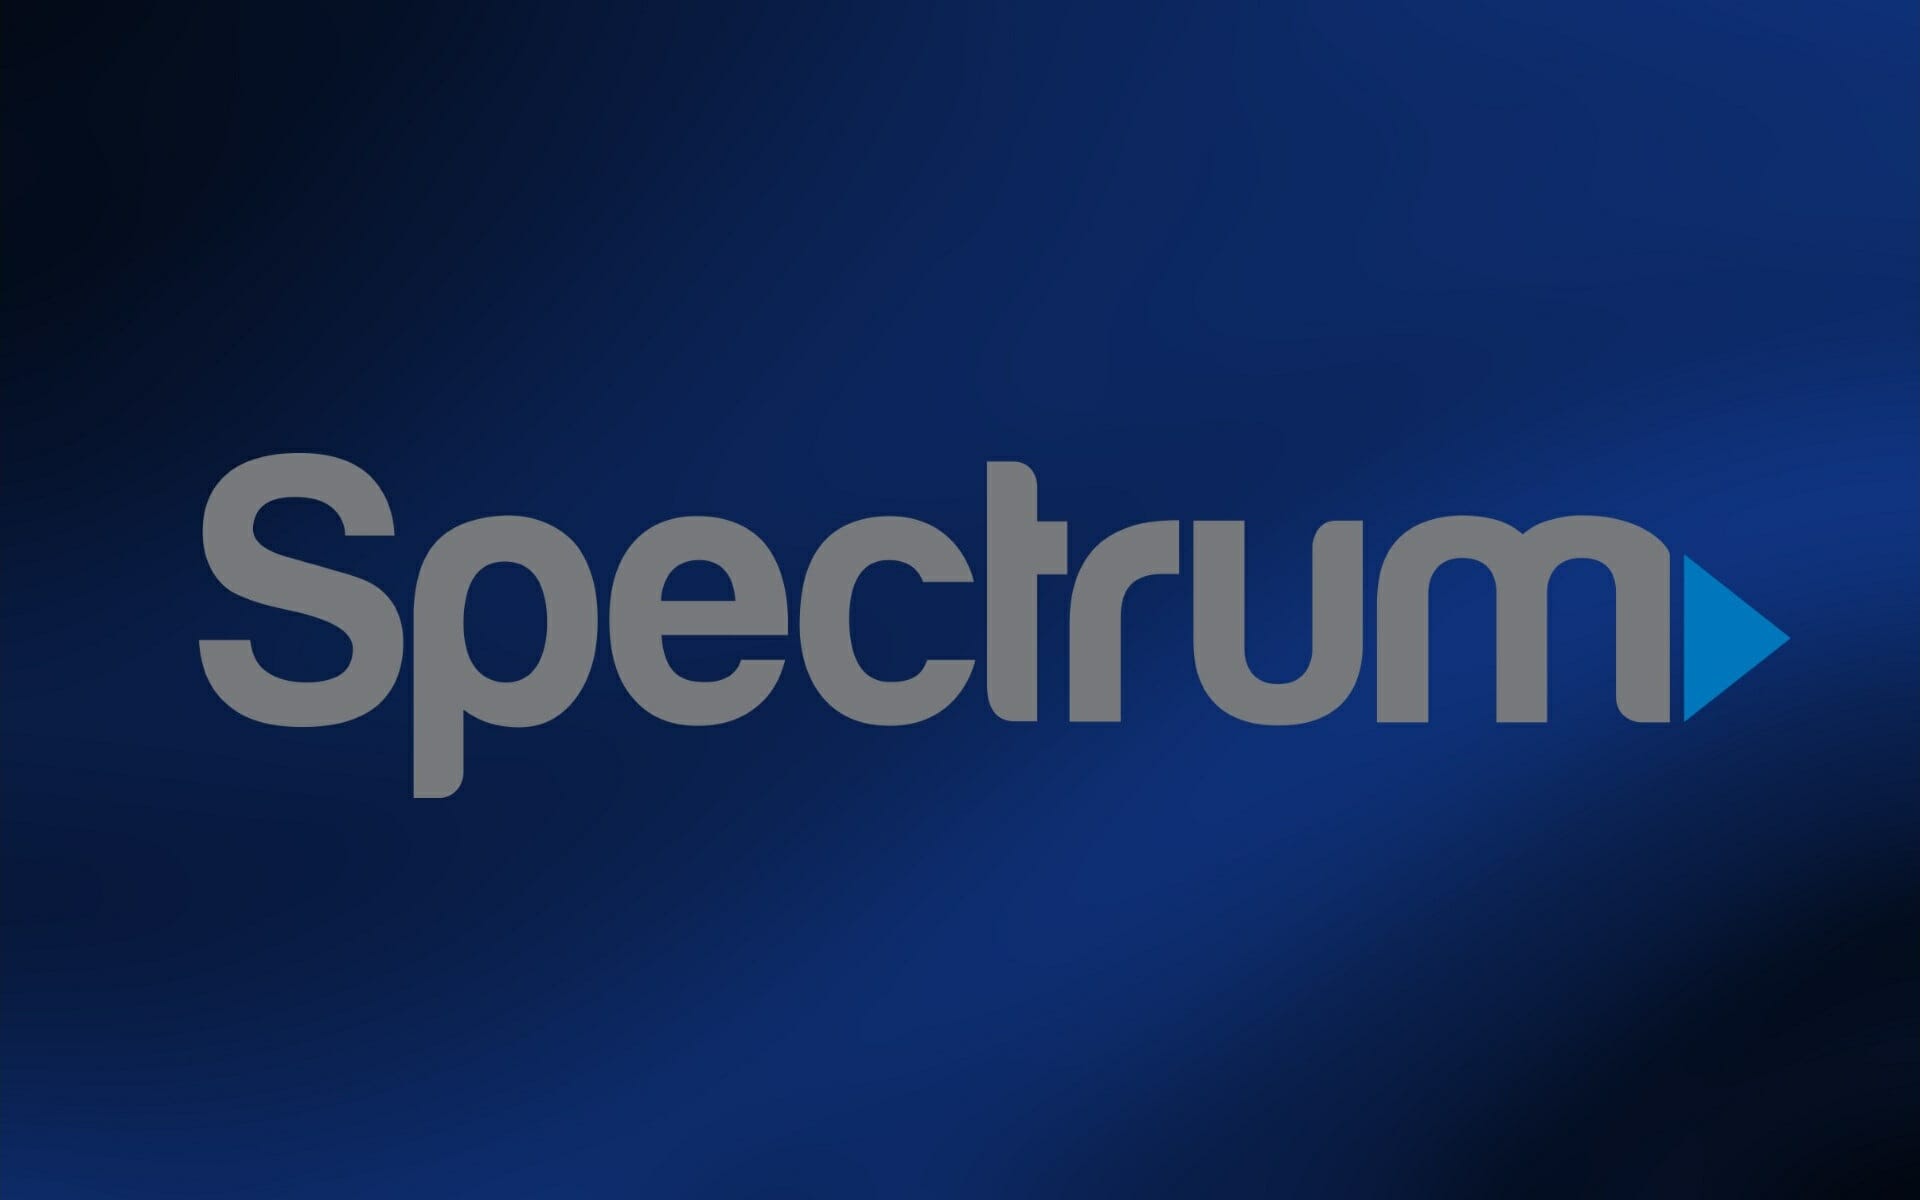 Spectrum Internet is down